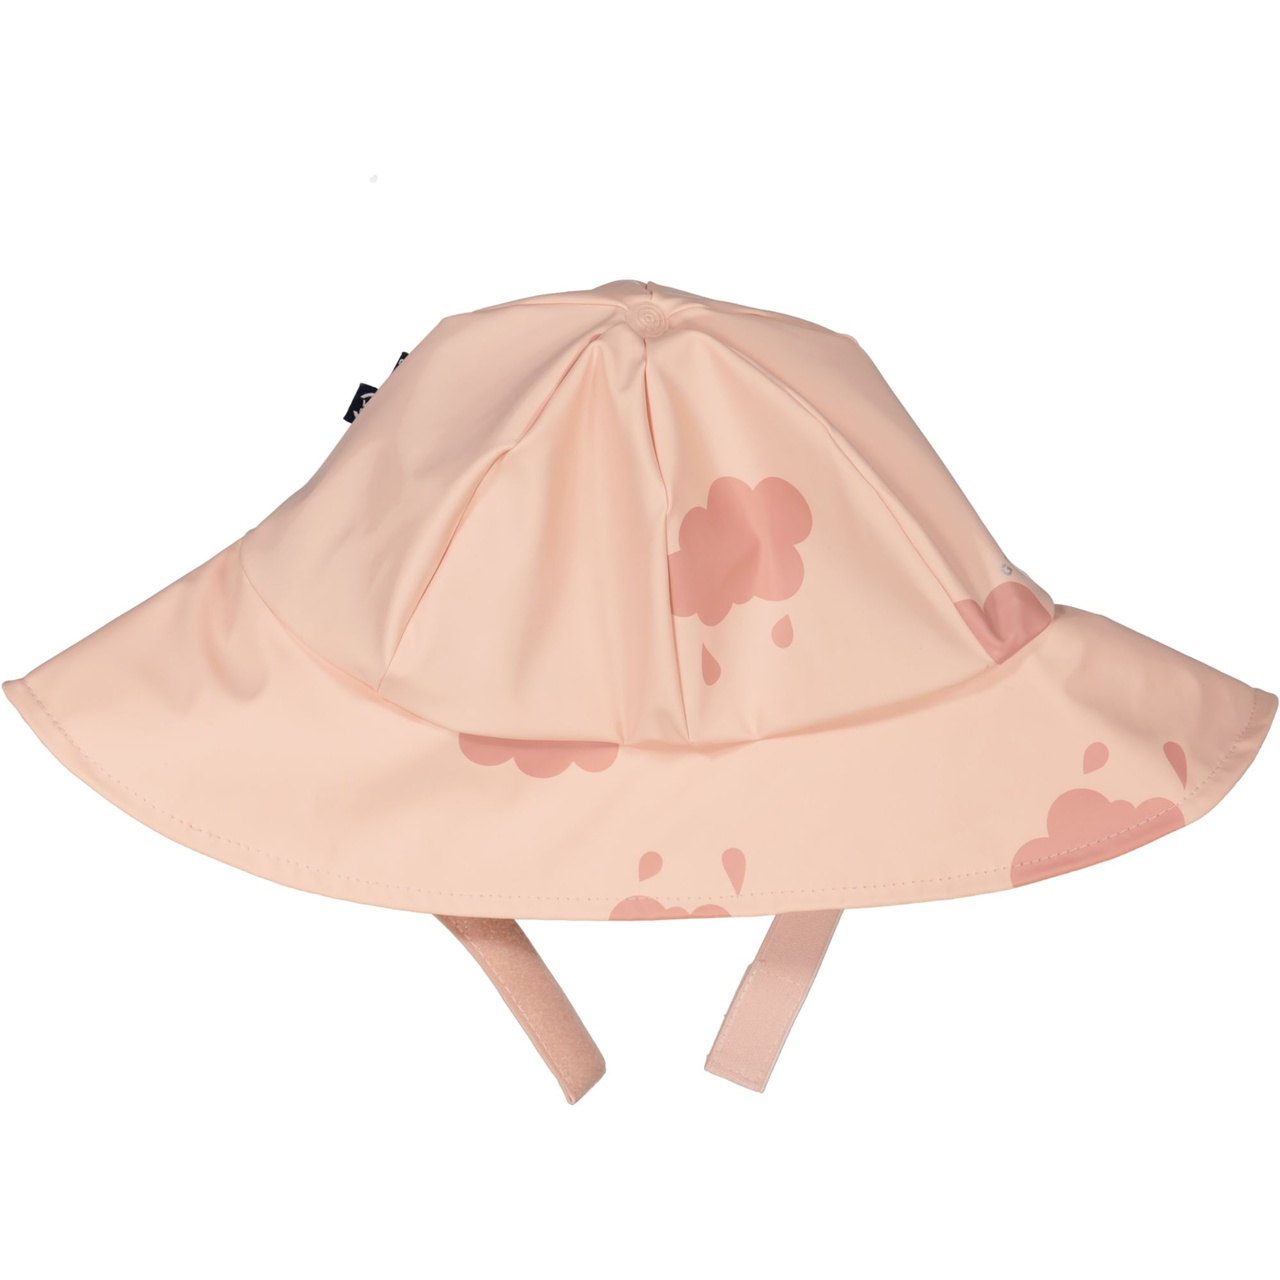 Rain hat fleece Pink cloud  4-6